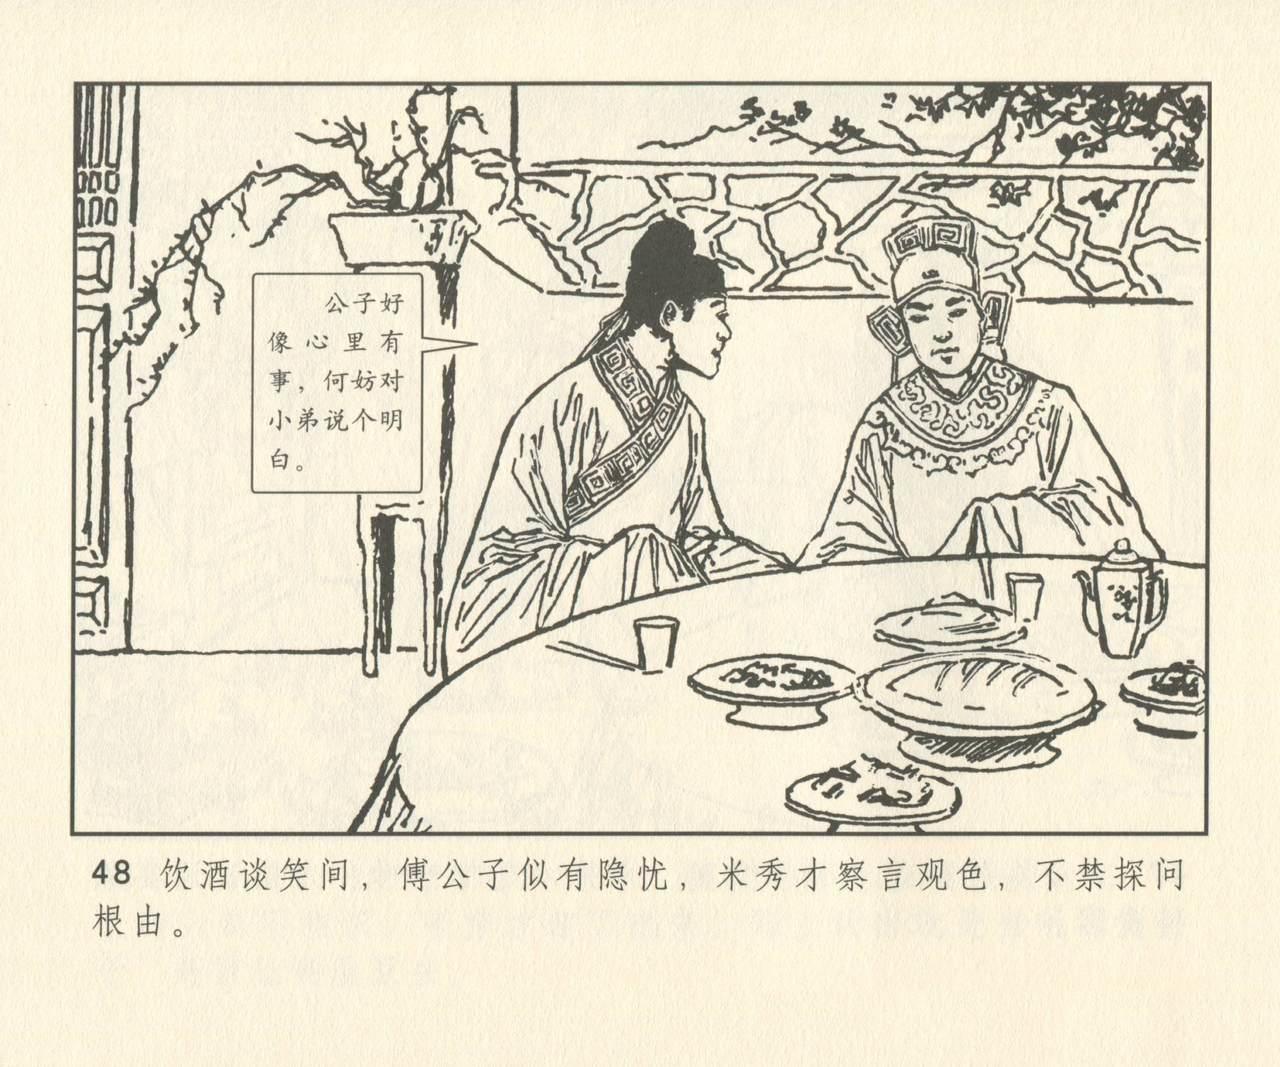 聊斋志异 张玮等绘 天津人民美术出版社 卷二十一 ~ 三十 176